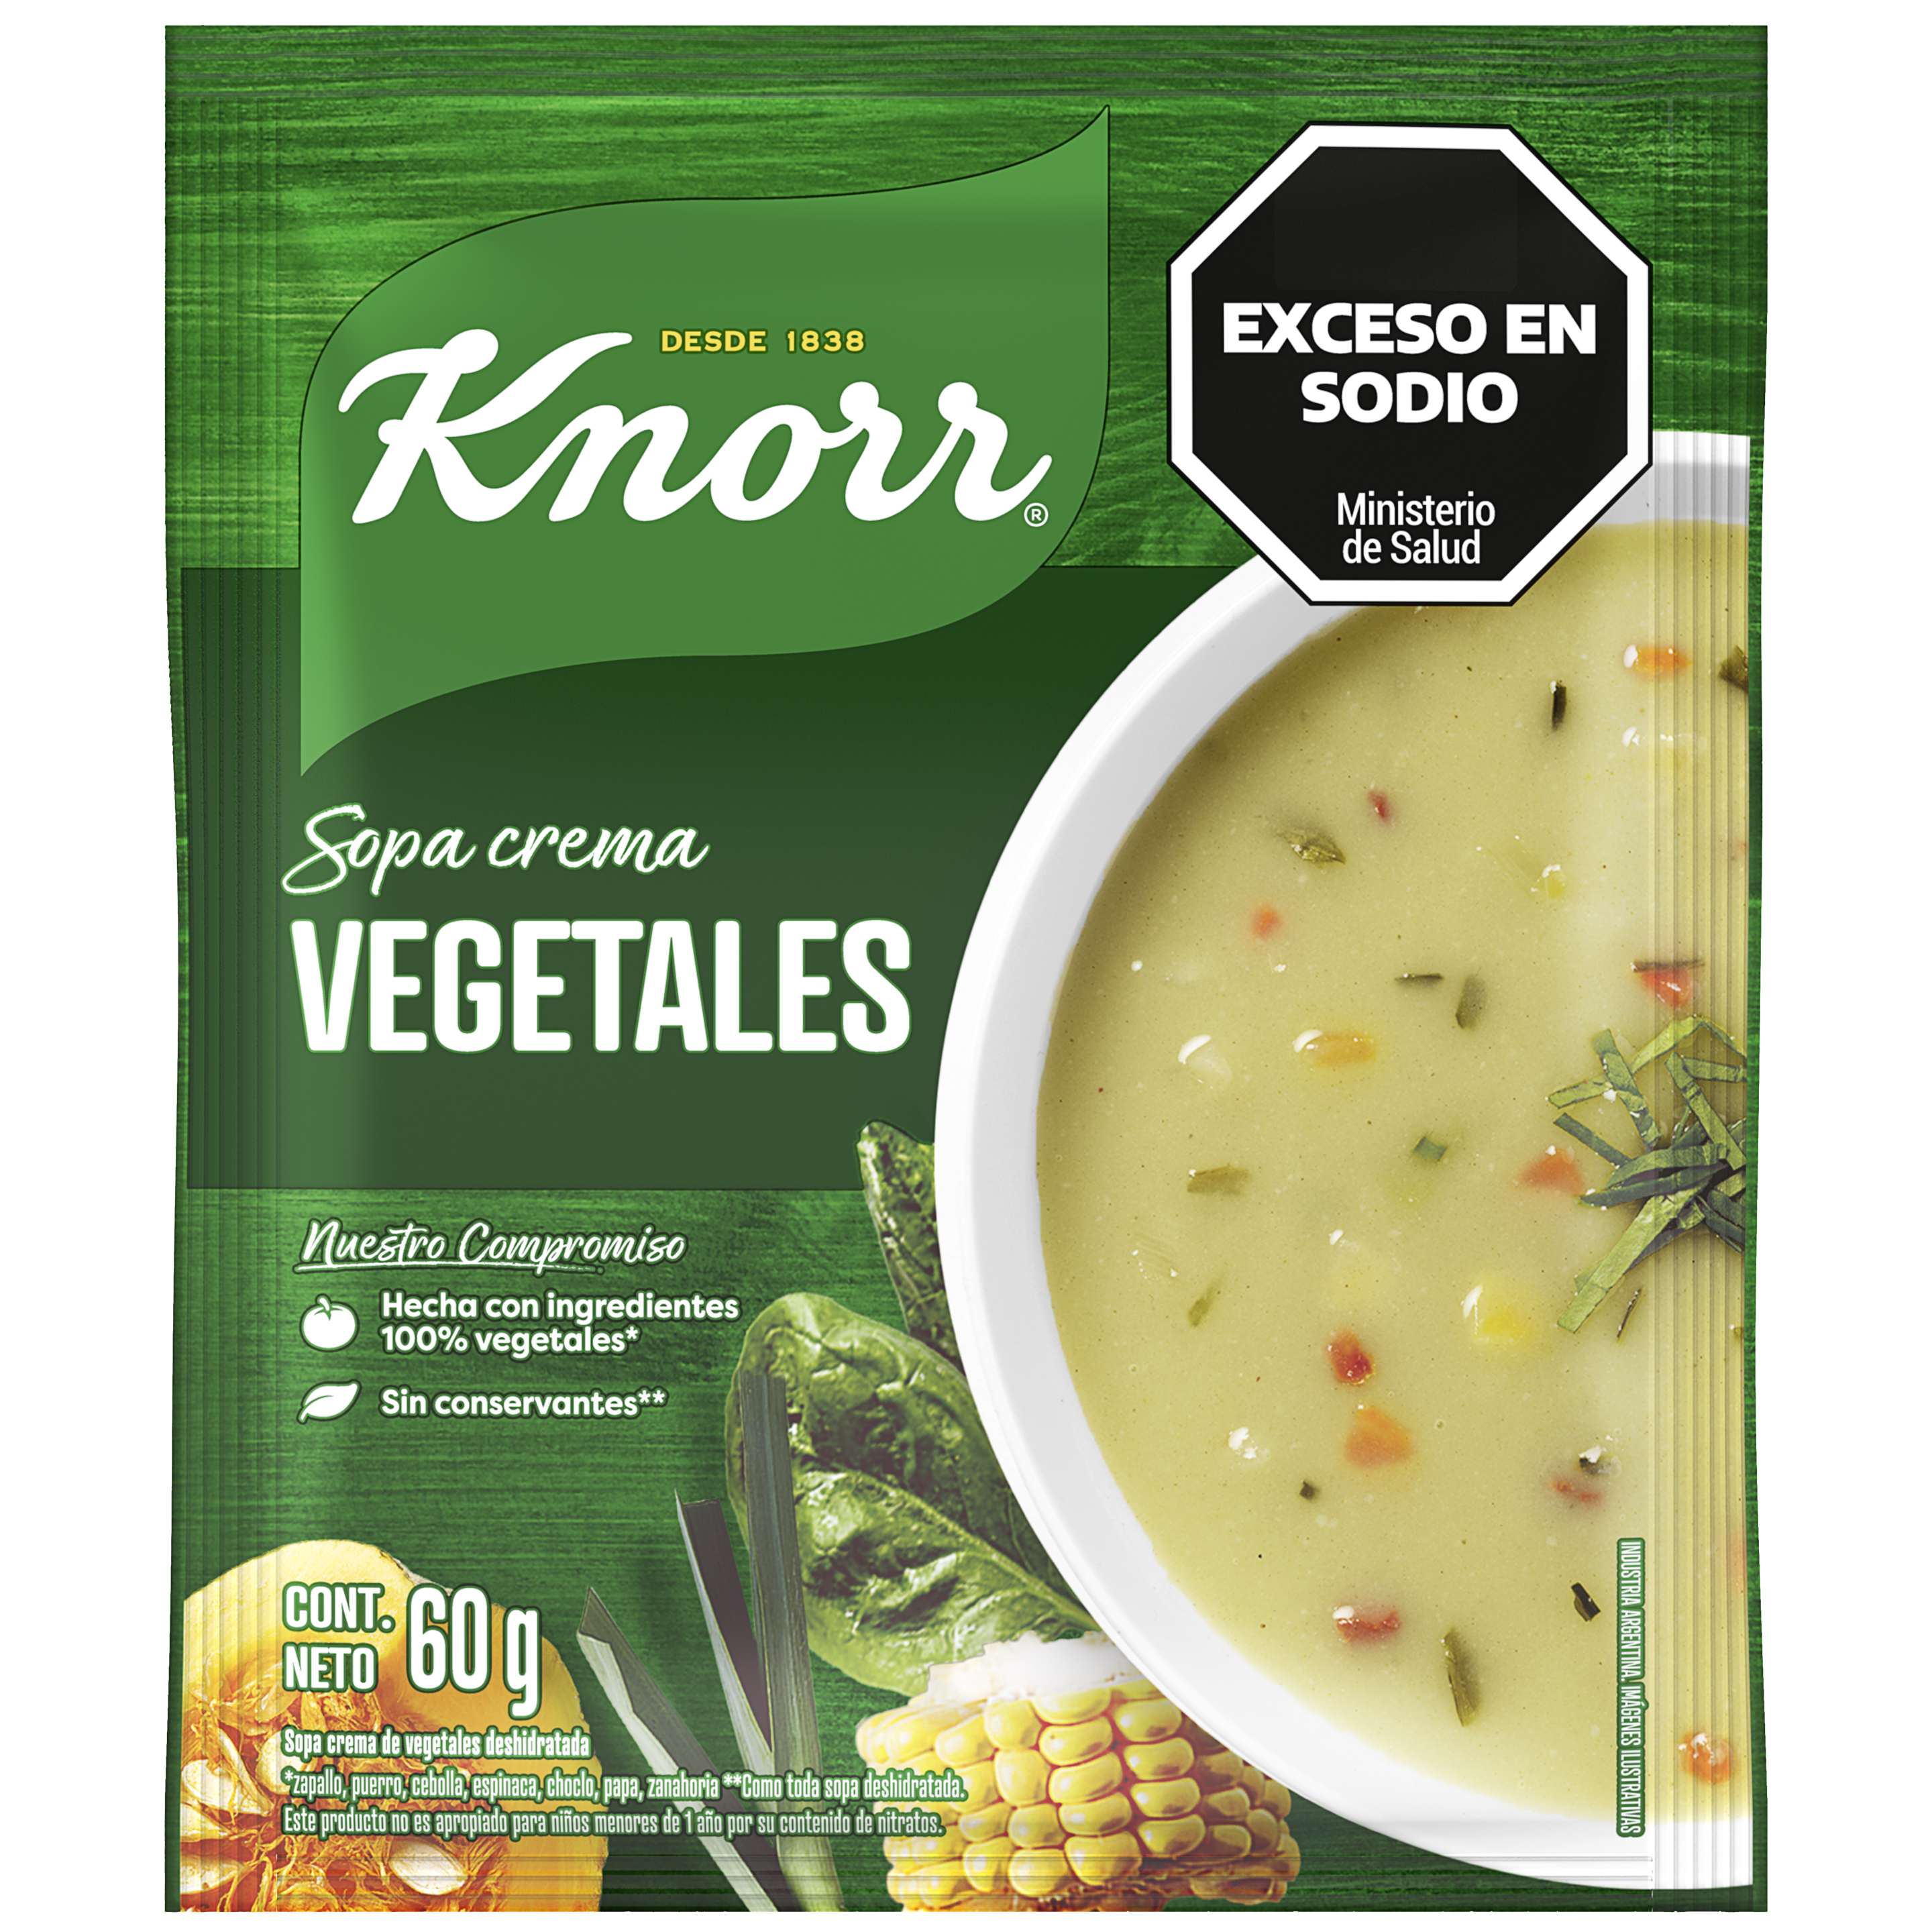 Imagen de envase Sopa Crema de Vegetales Knorr